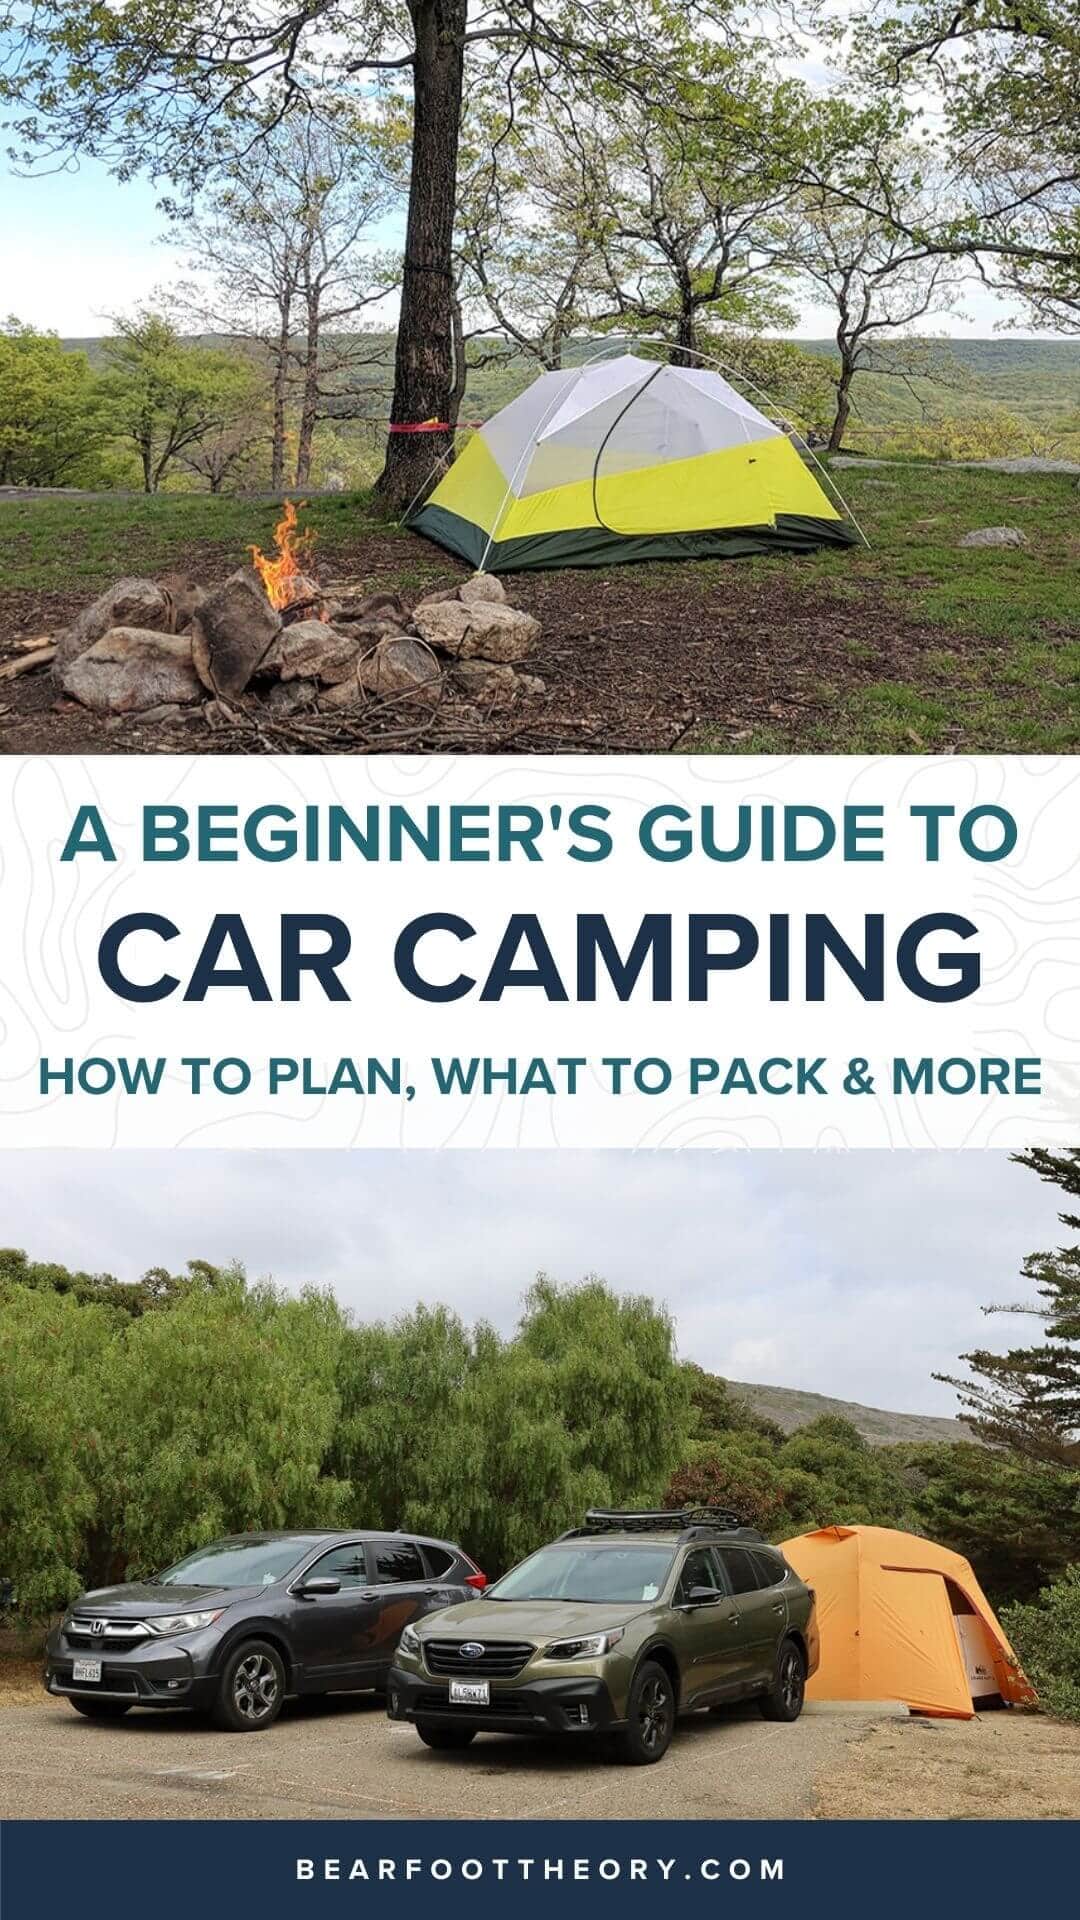 用这个完整的初学者指南计划一次史诗般的汽车露营之旅，包括寻找营地、装备、烹饪、打包什么的提示等等。